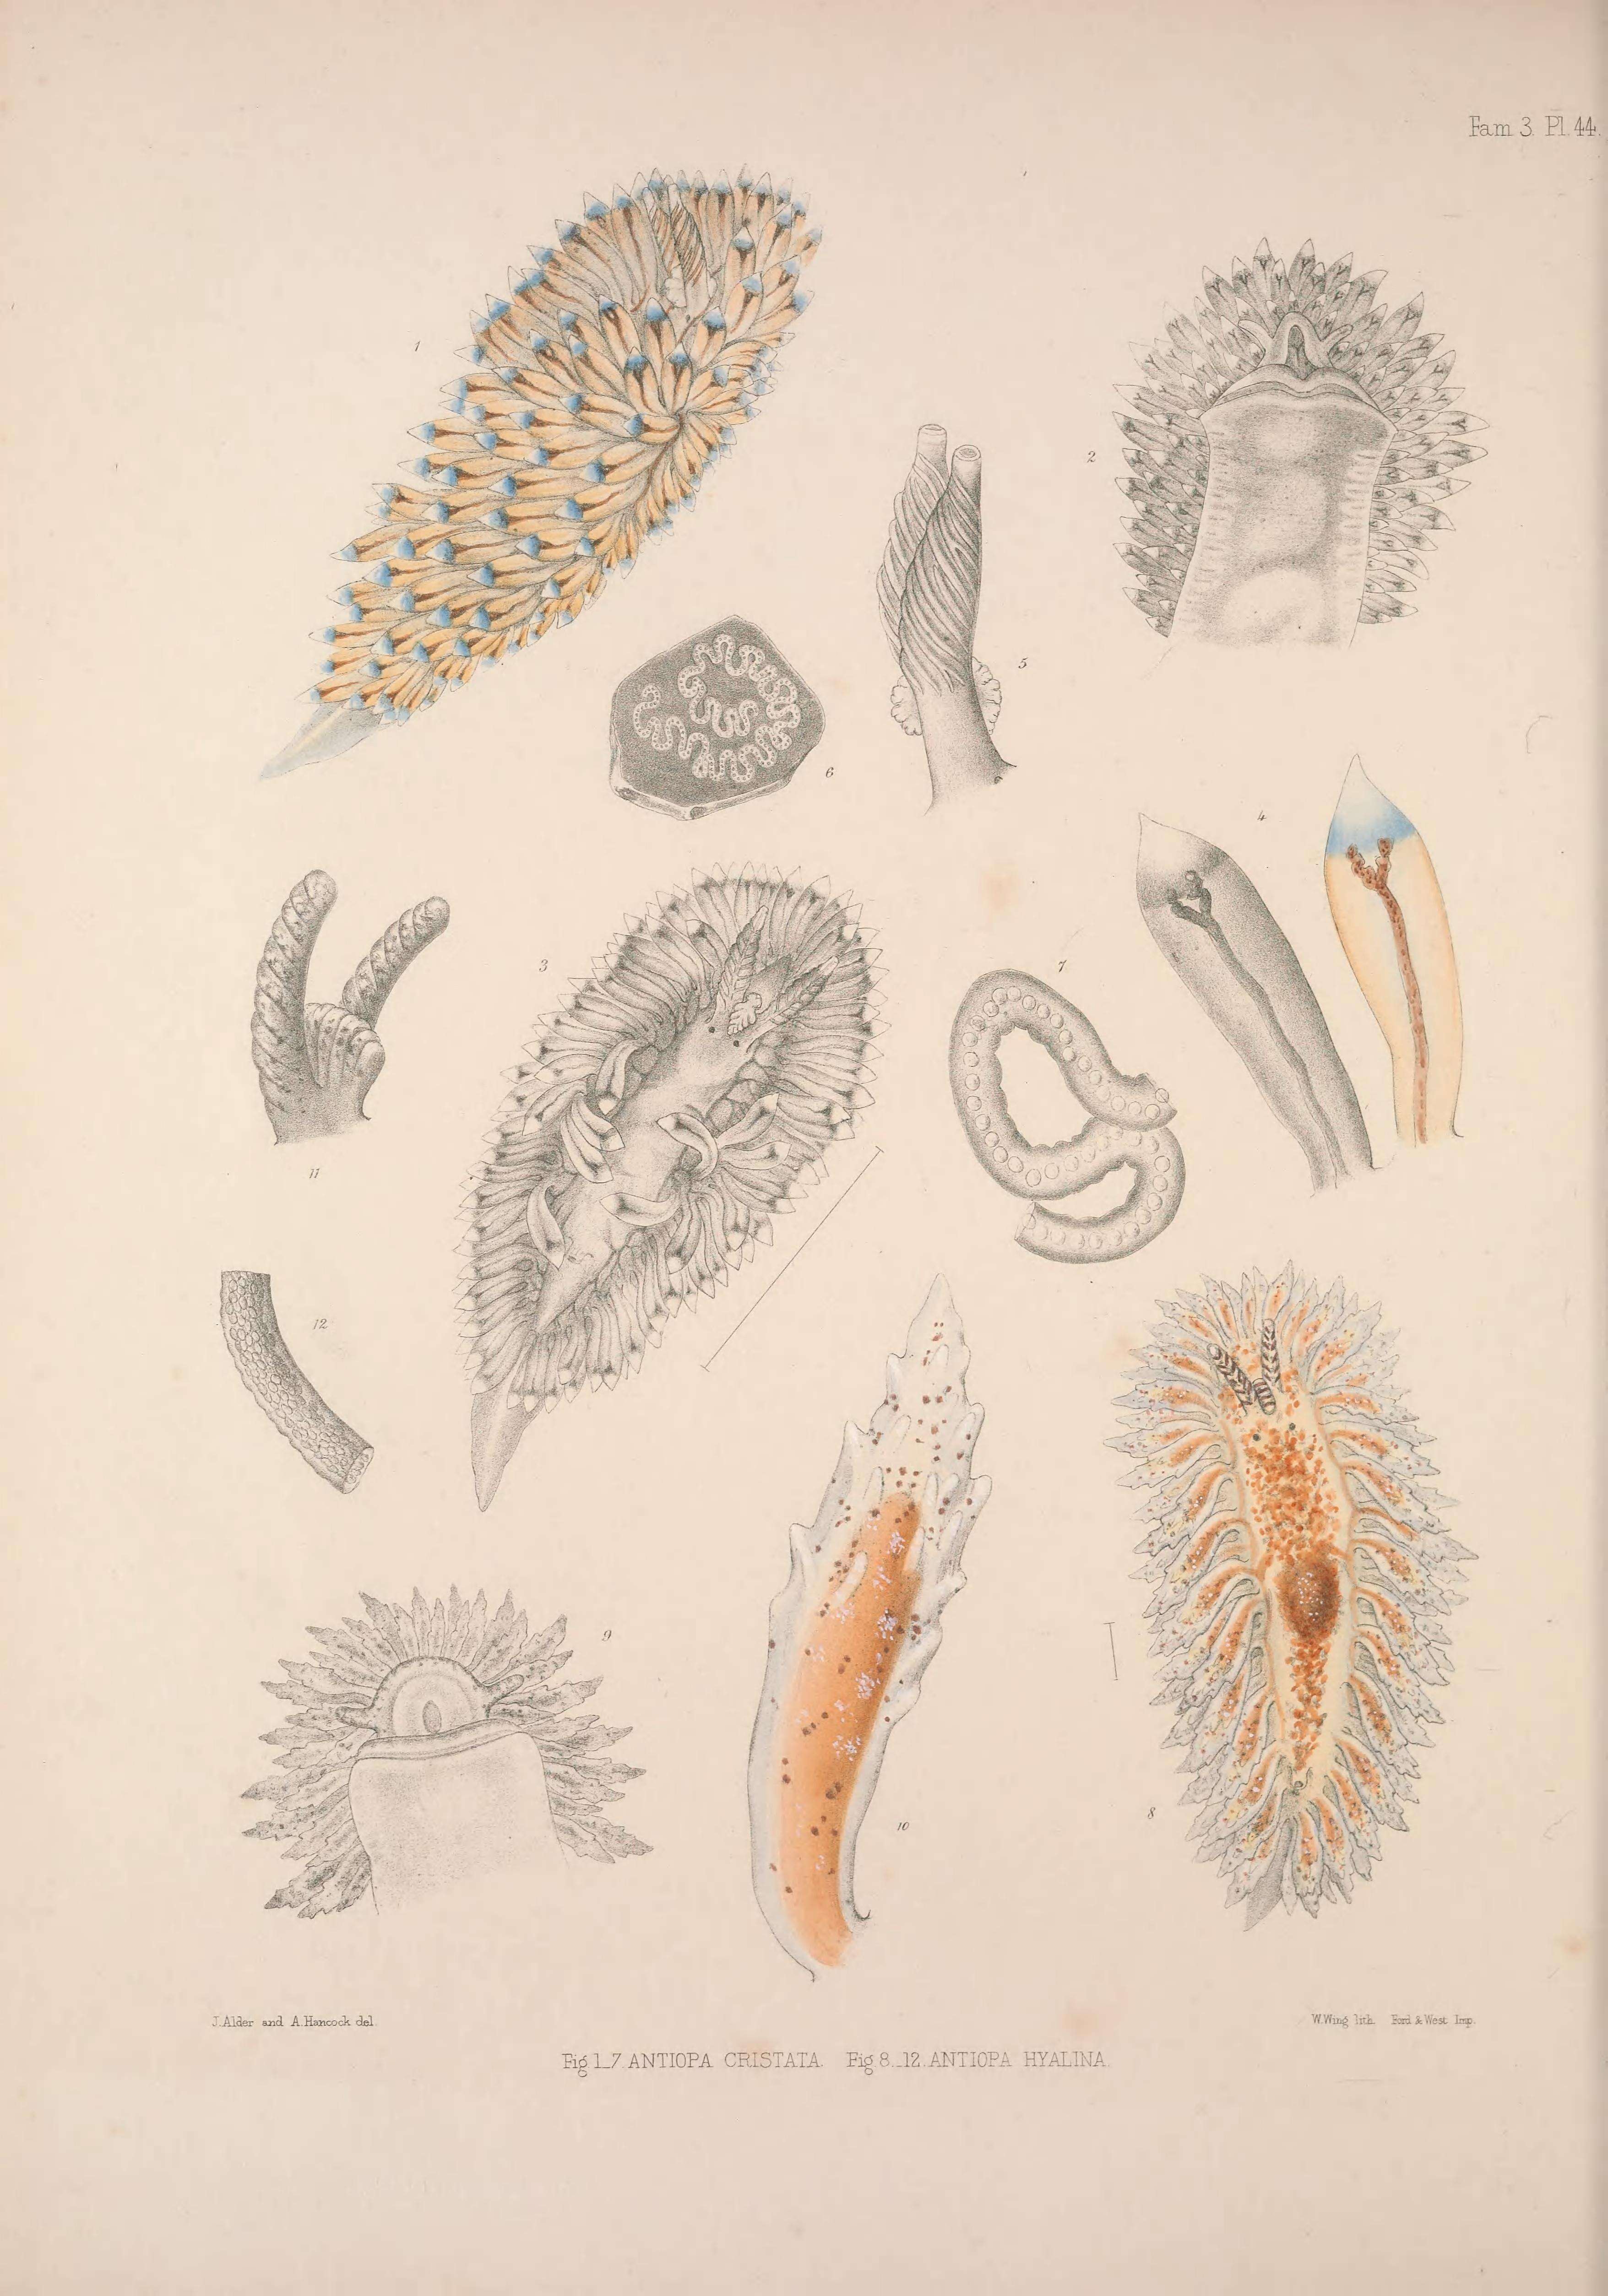 Image de Antiopella cristata (Delle Chiaje 1841)